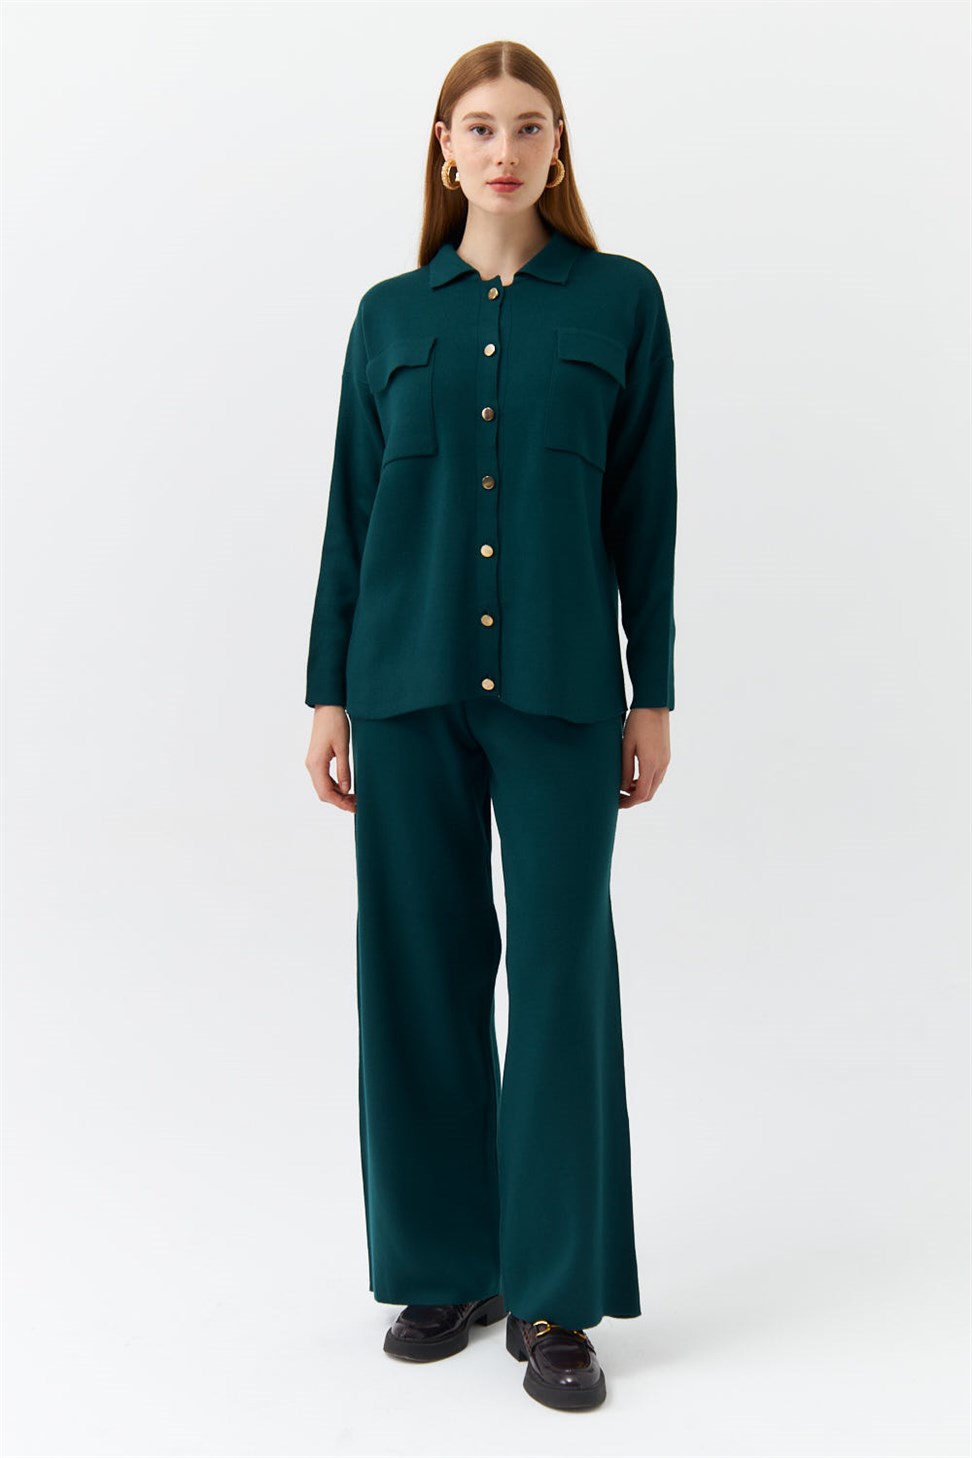 Modest Shirt Collar Pocket Knitwear Emerald Green Womens Suit